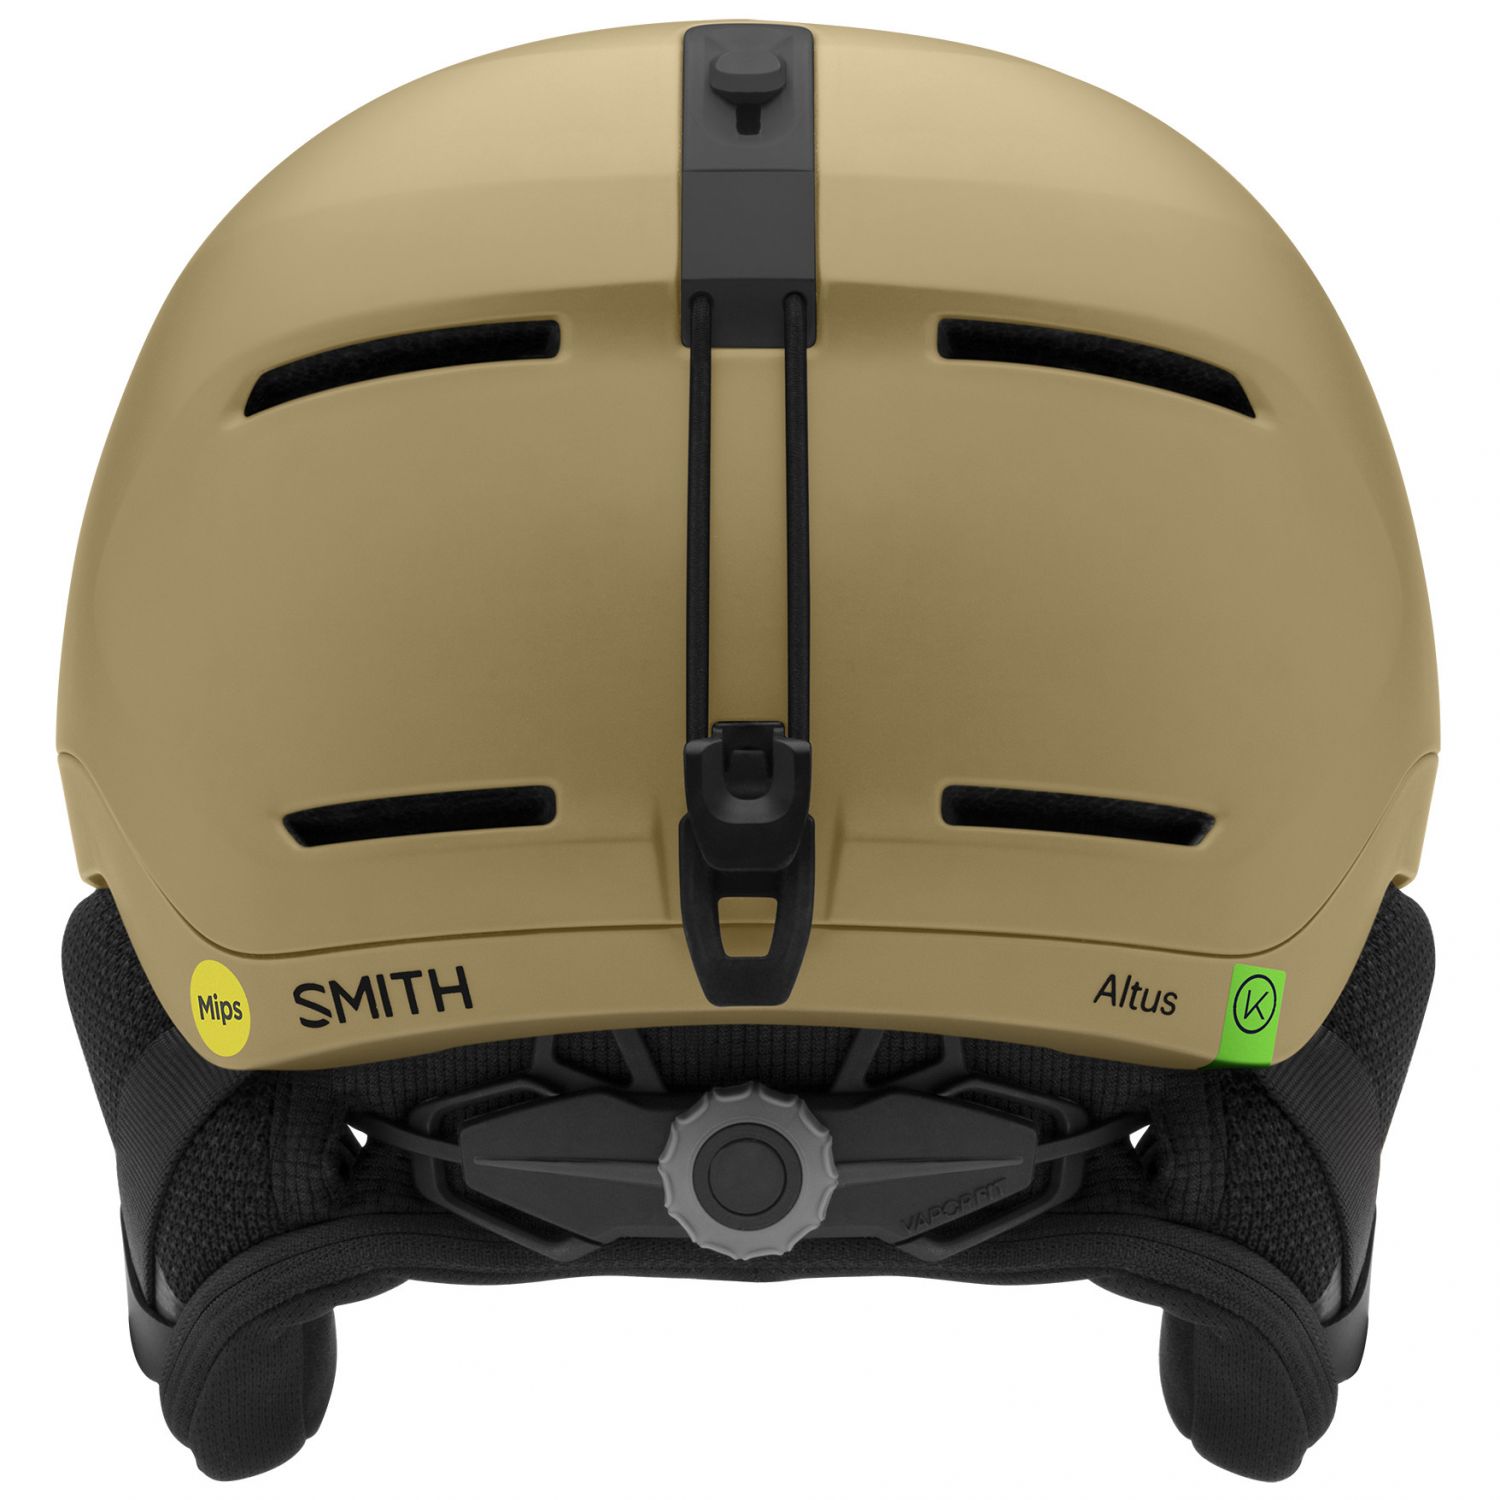 Smith Altus MIPS, hiihtokypärä, ruskea